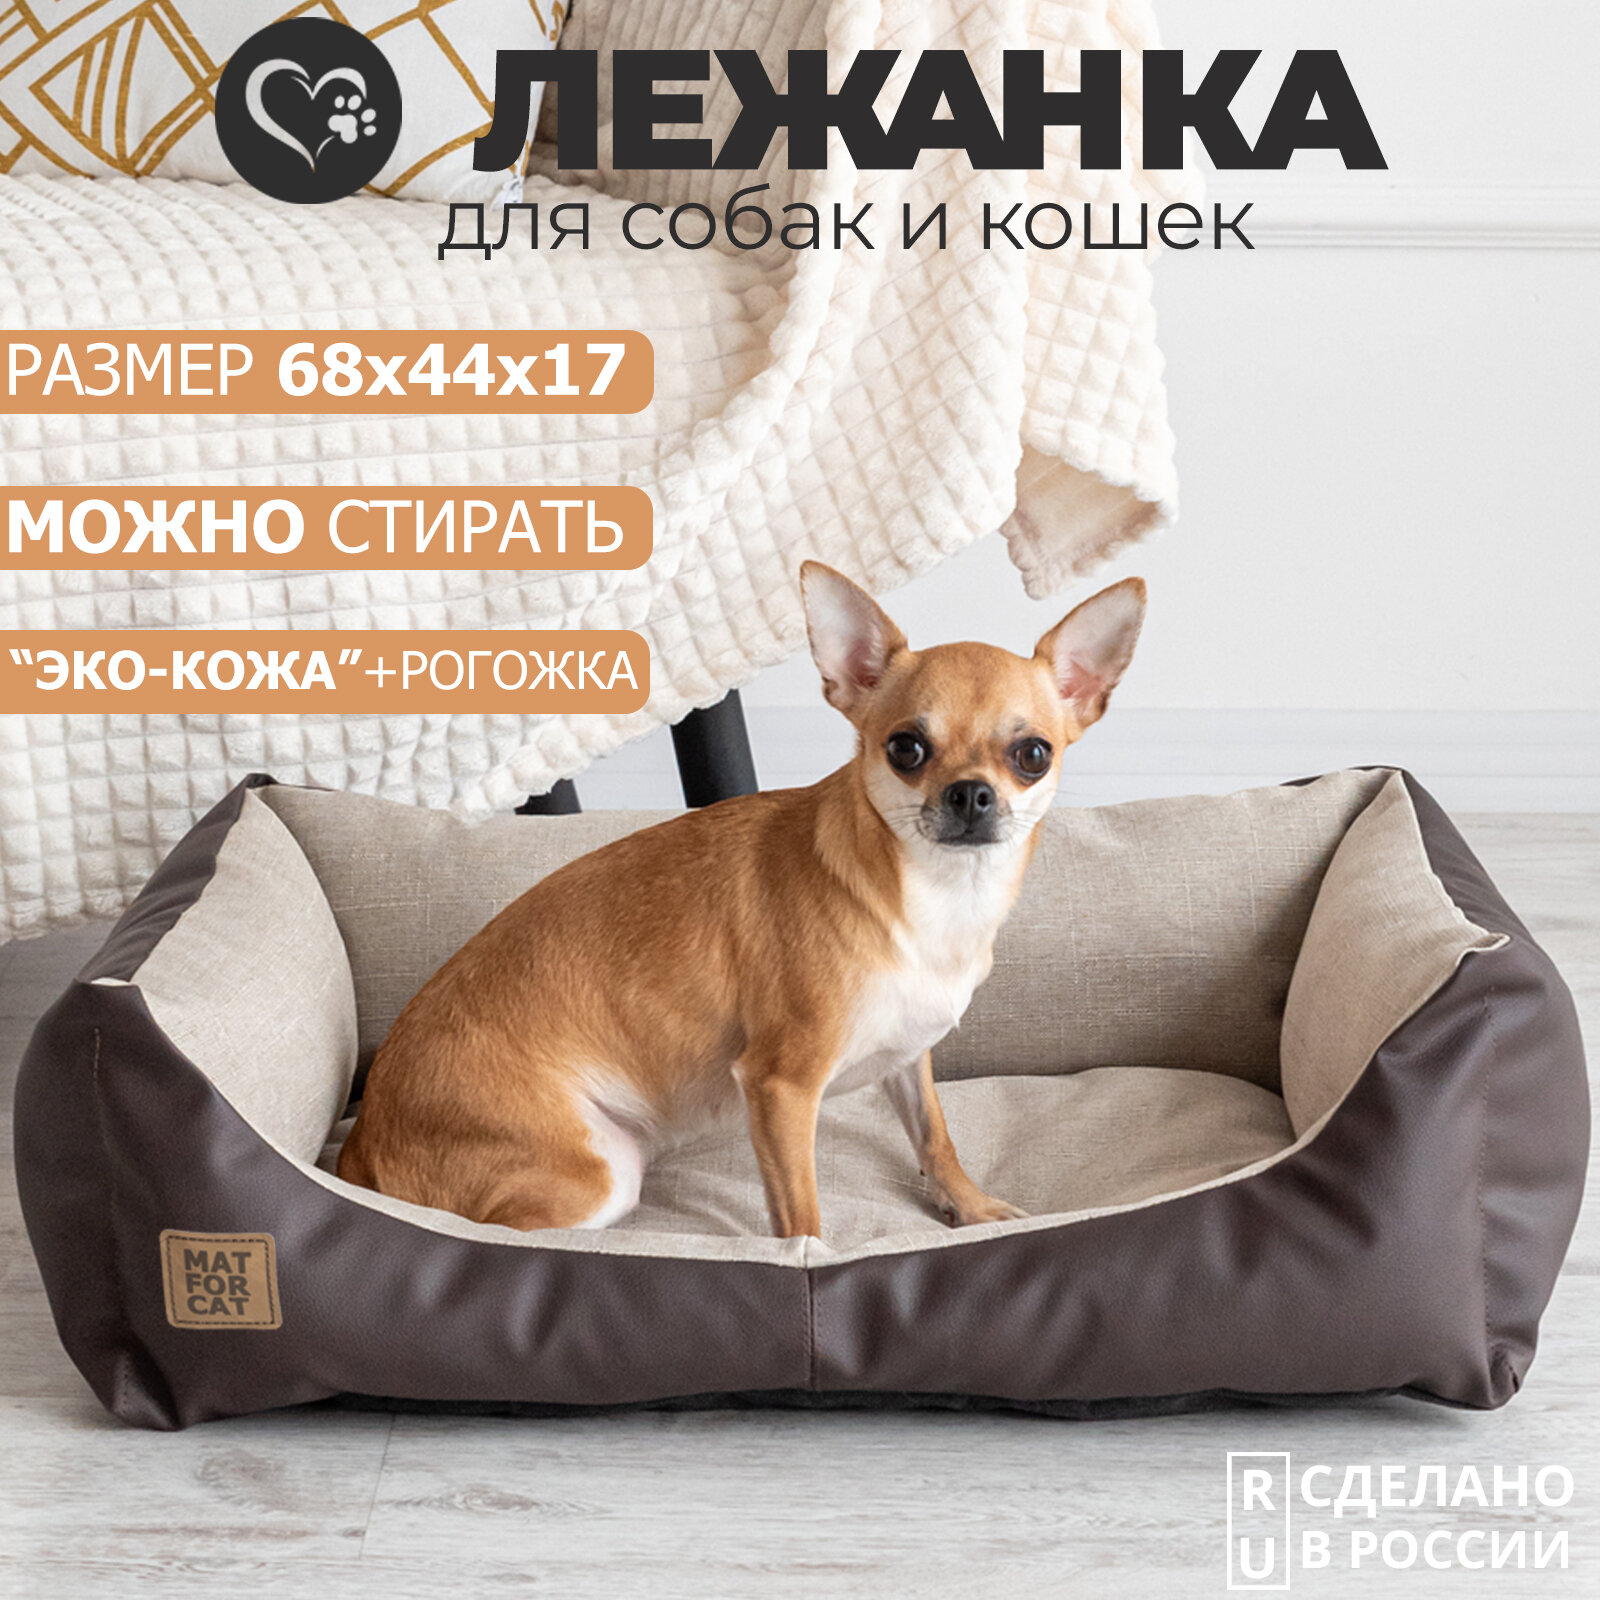 Лежак для собак и кошек "Экокожа+Рогожка" M 68*44*17см Matforcat Цвет: Бежевый